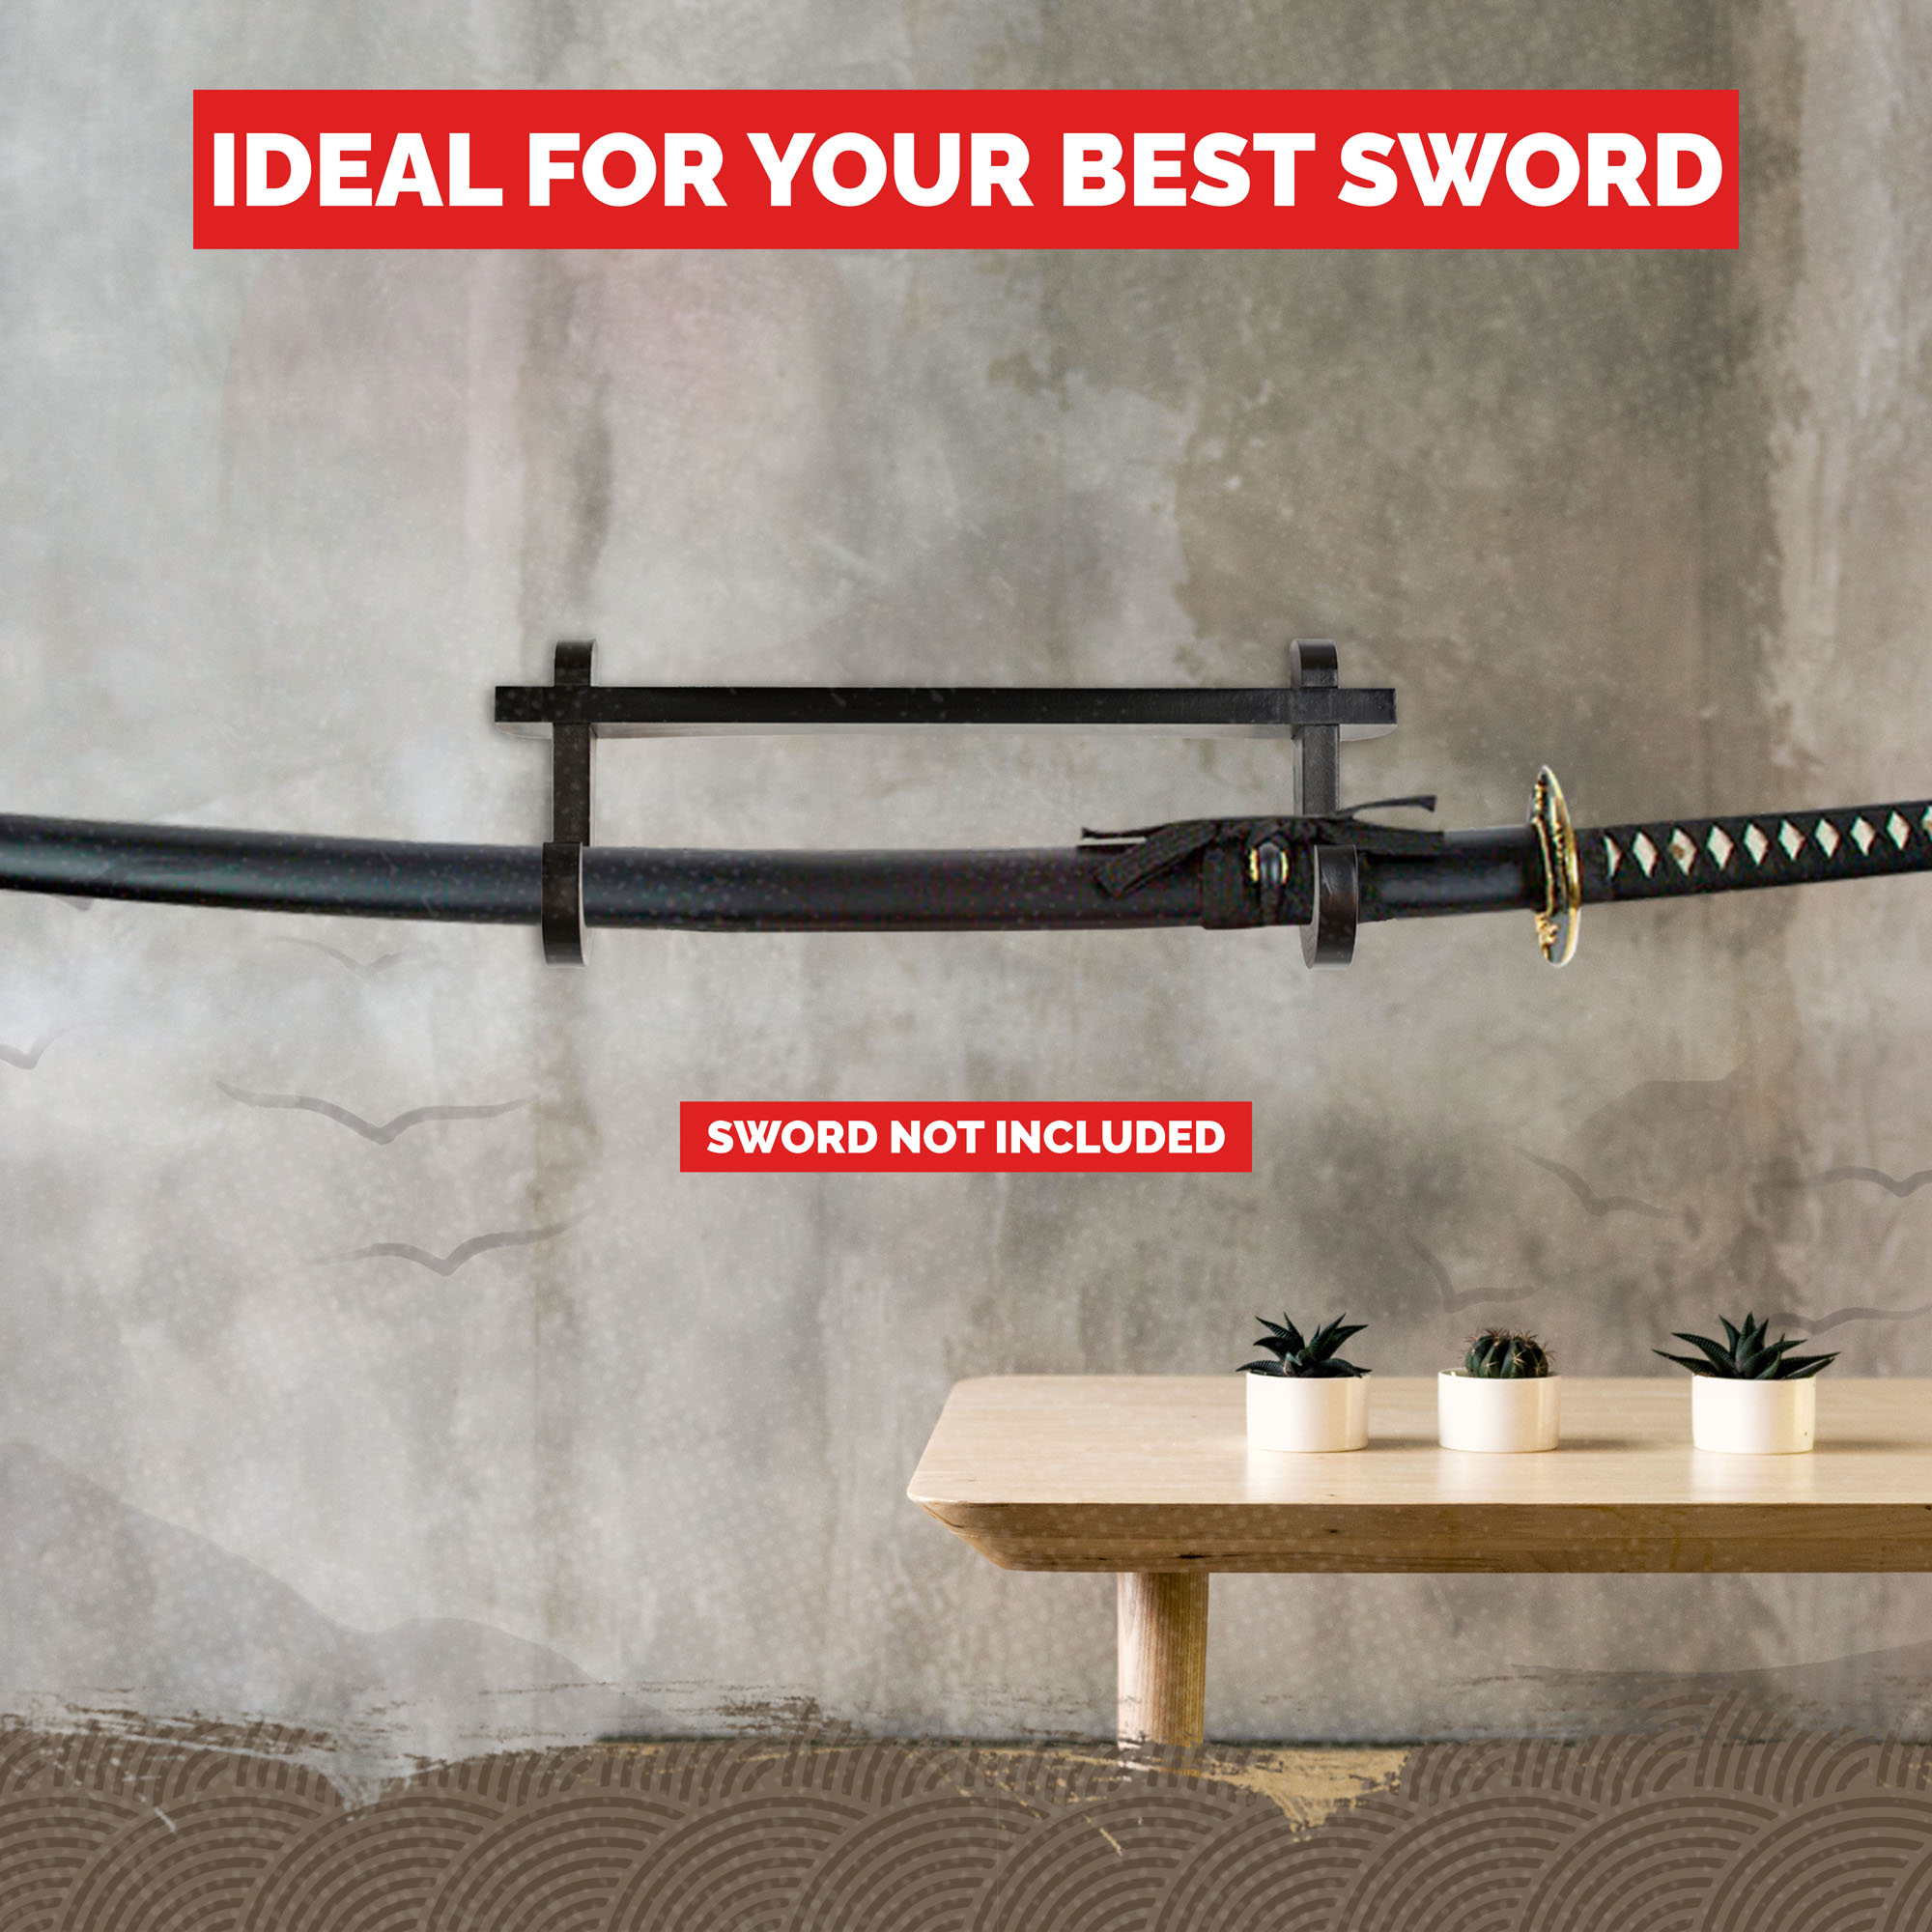 Wall holder for 1 Samurai sword